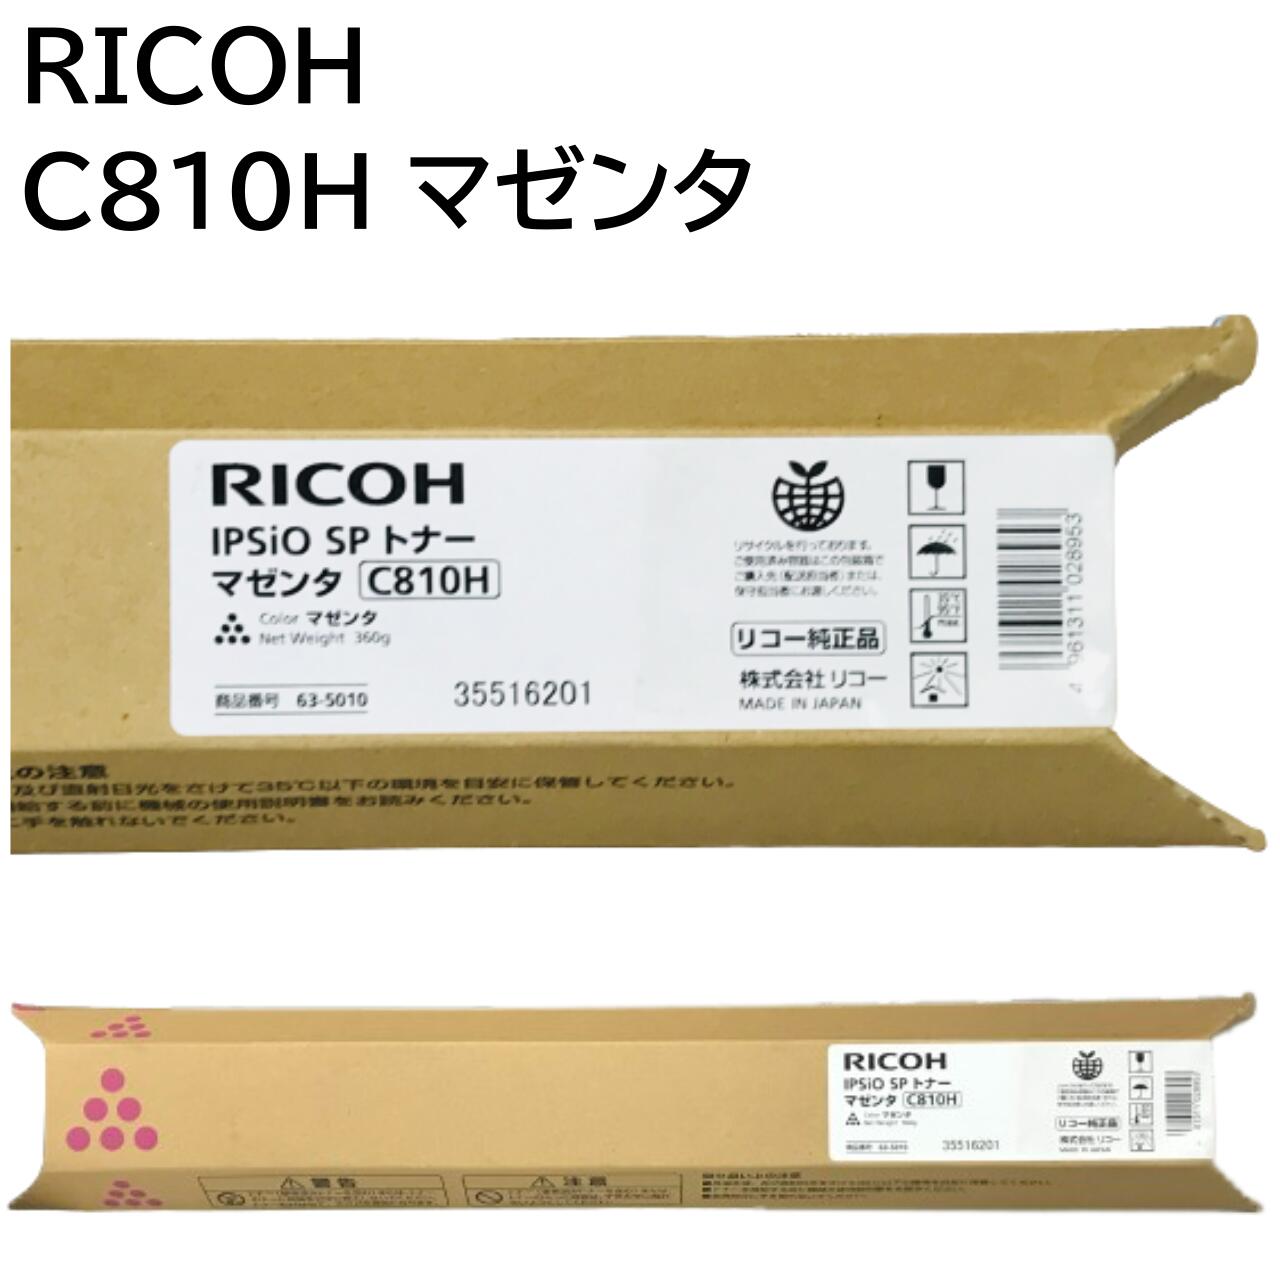  新品 RICOH リコー IPSiO SP トナー マゼンタ C810H 635010 IPSiO SP C810 IPSiO SP C810M IPSiO SP C810-ME IPSiO SP C811 IPSiO SP C811M 送料無料